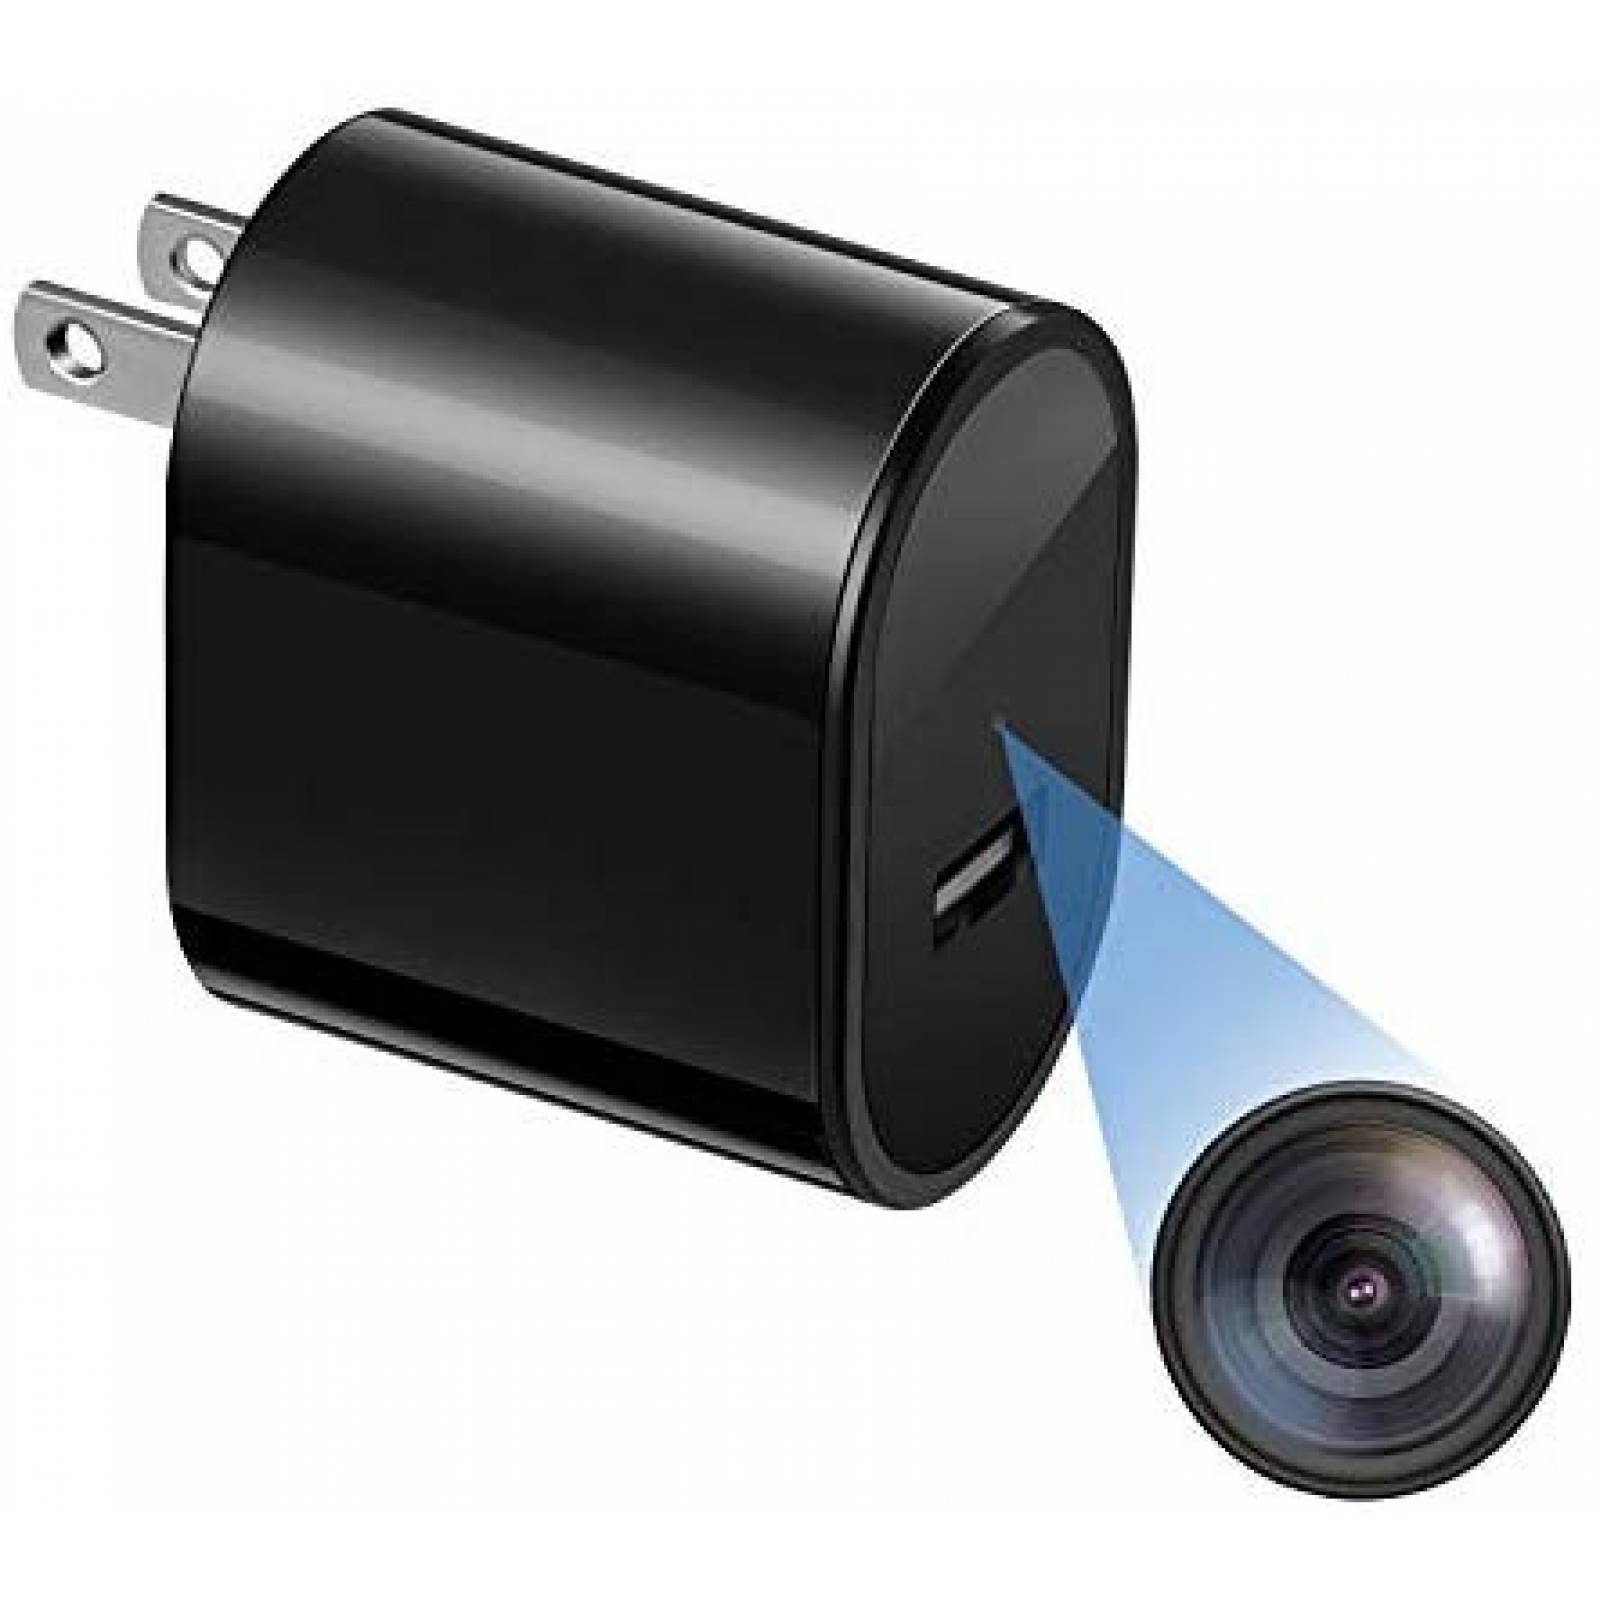 Cámara espía Rovtop HD 1080P en cargador USB -Negro